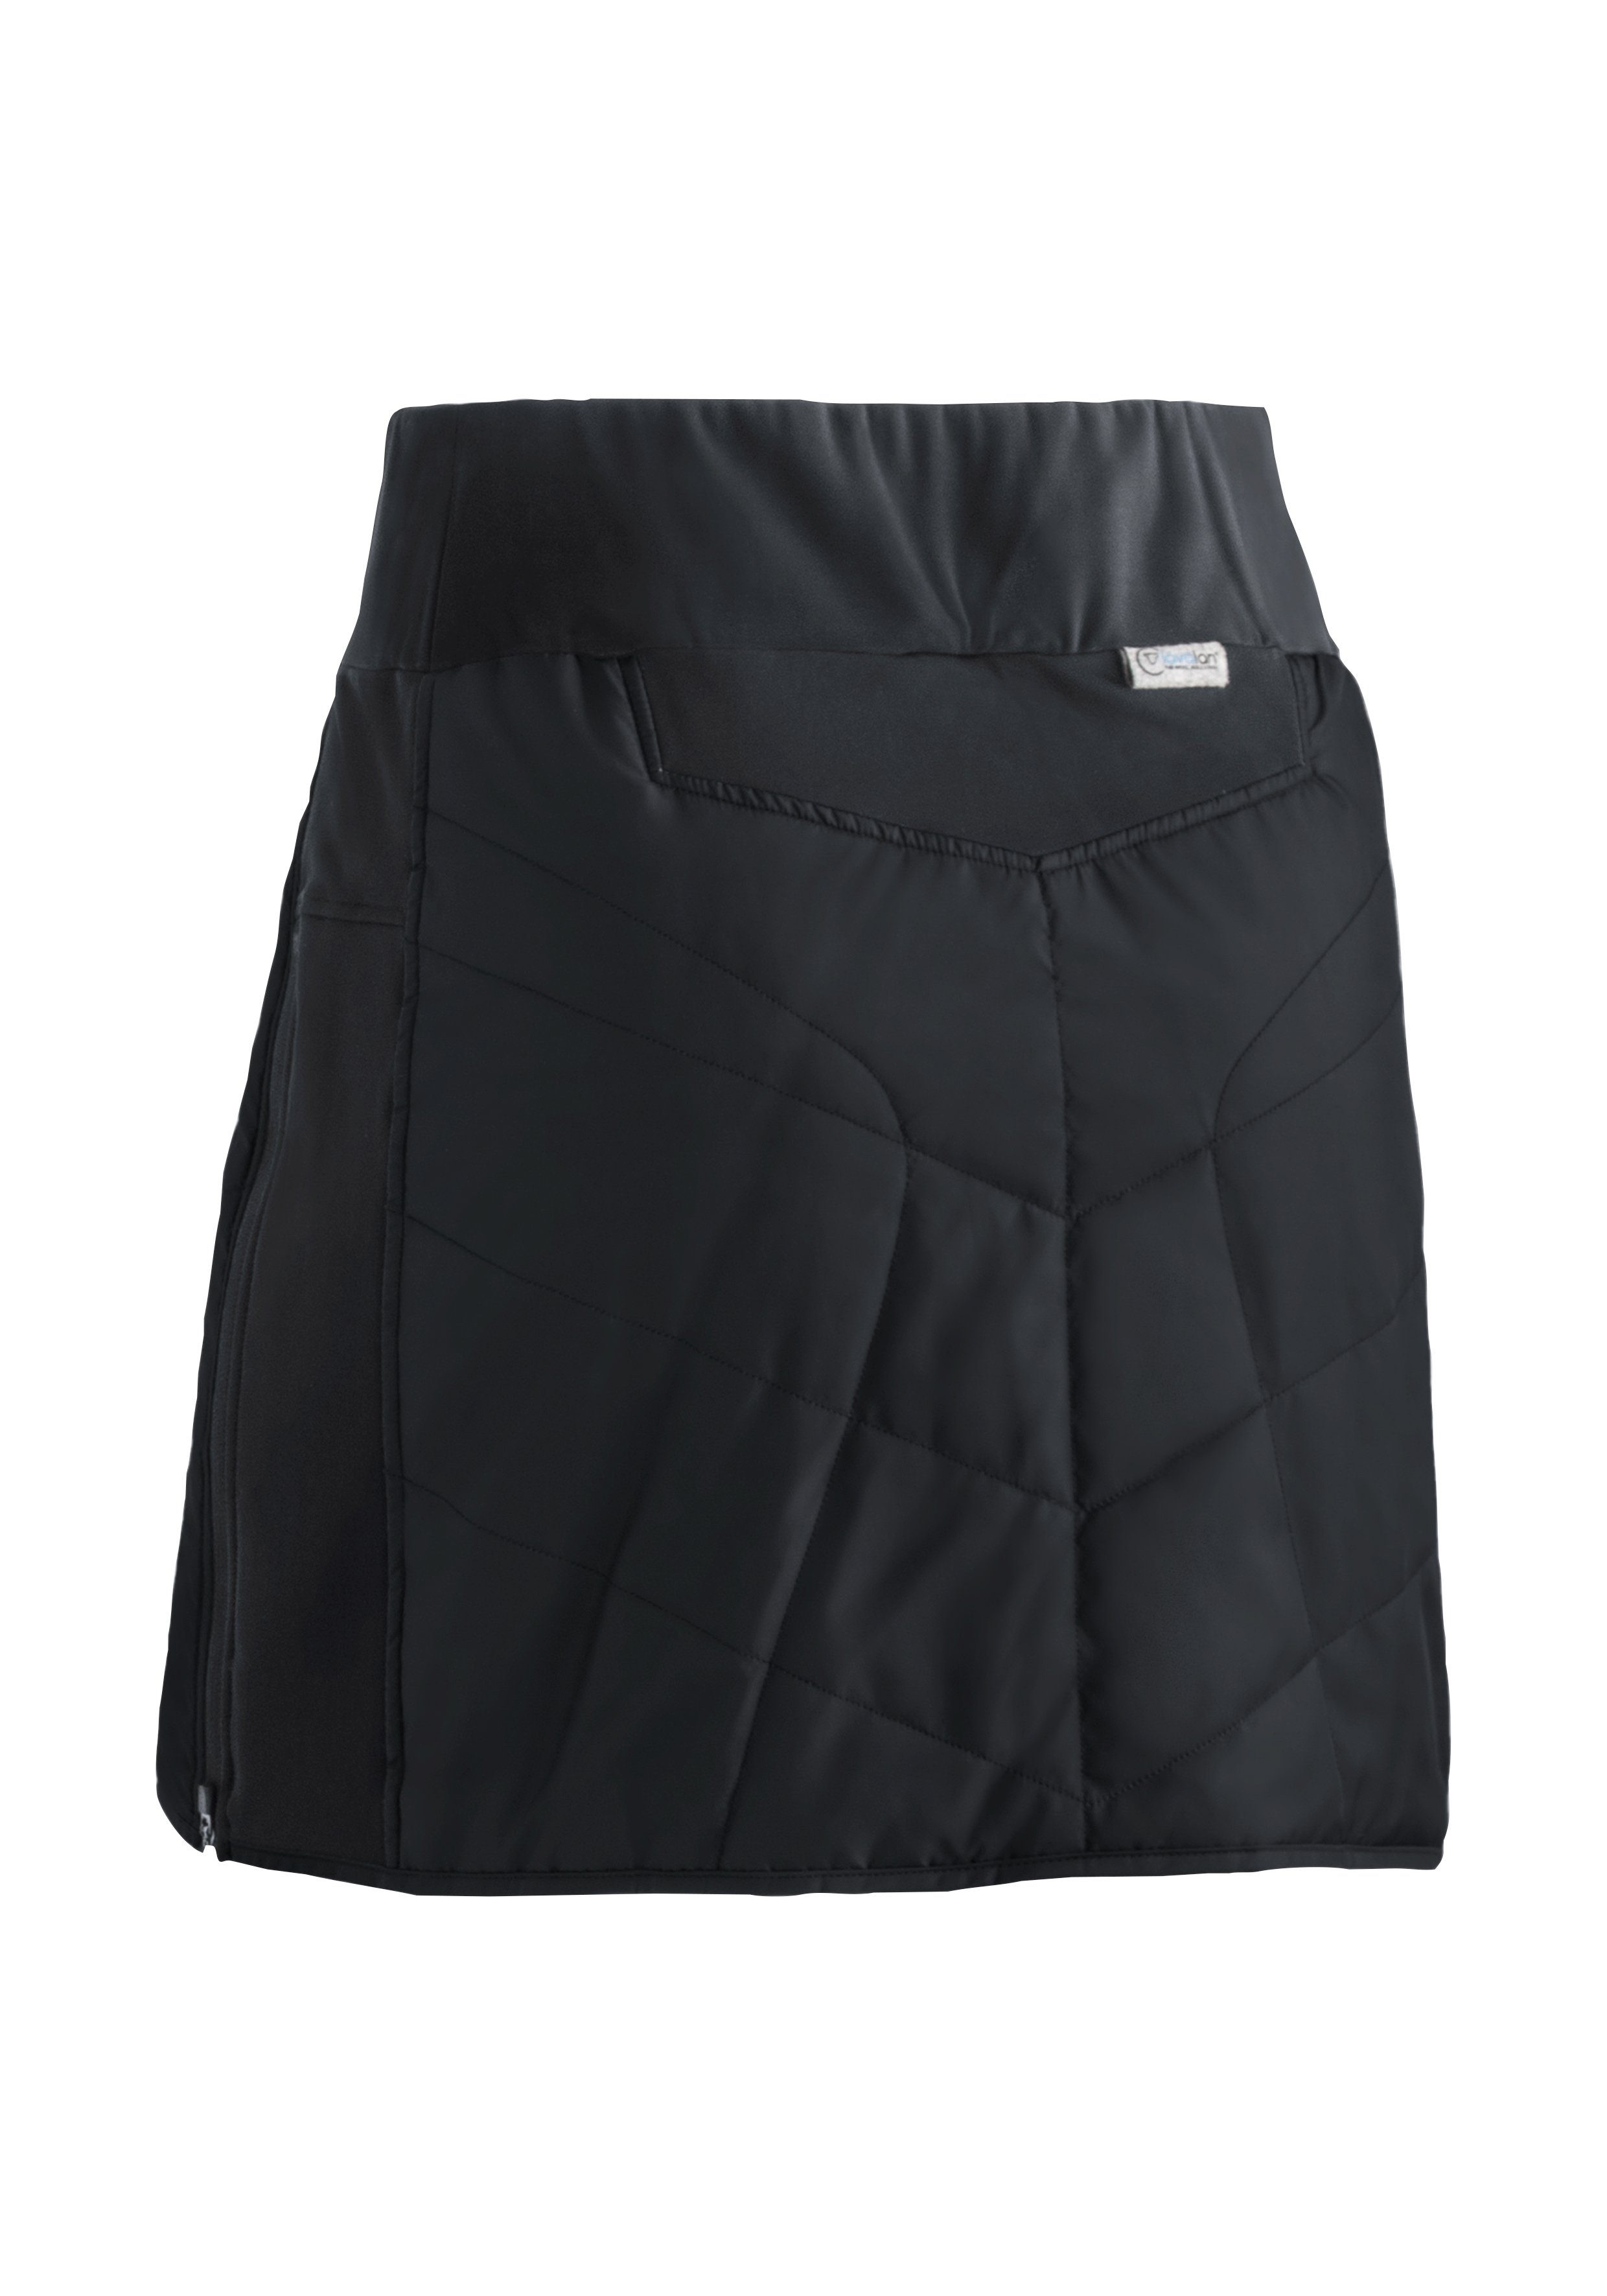 W Bund atmungsaktiv Skirt windabweisend, Sports Damen elastischer Skjoma Maier schwarz und Überrock, Sweatrock